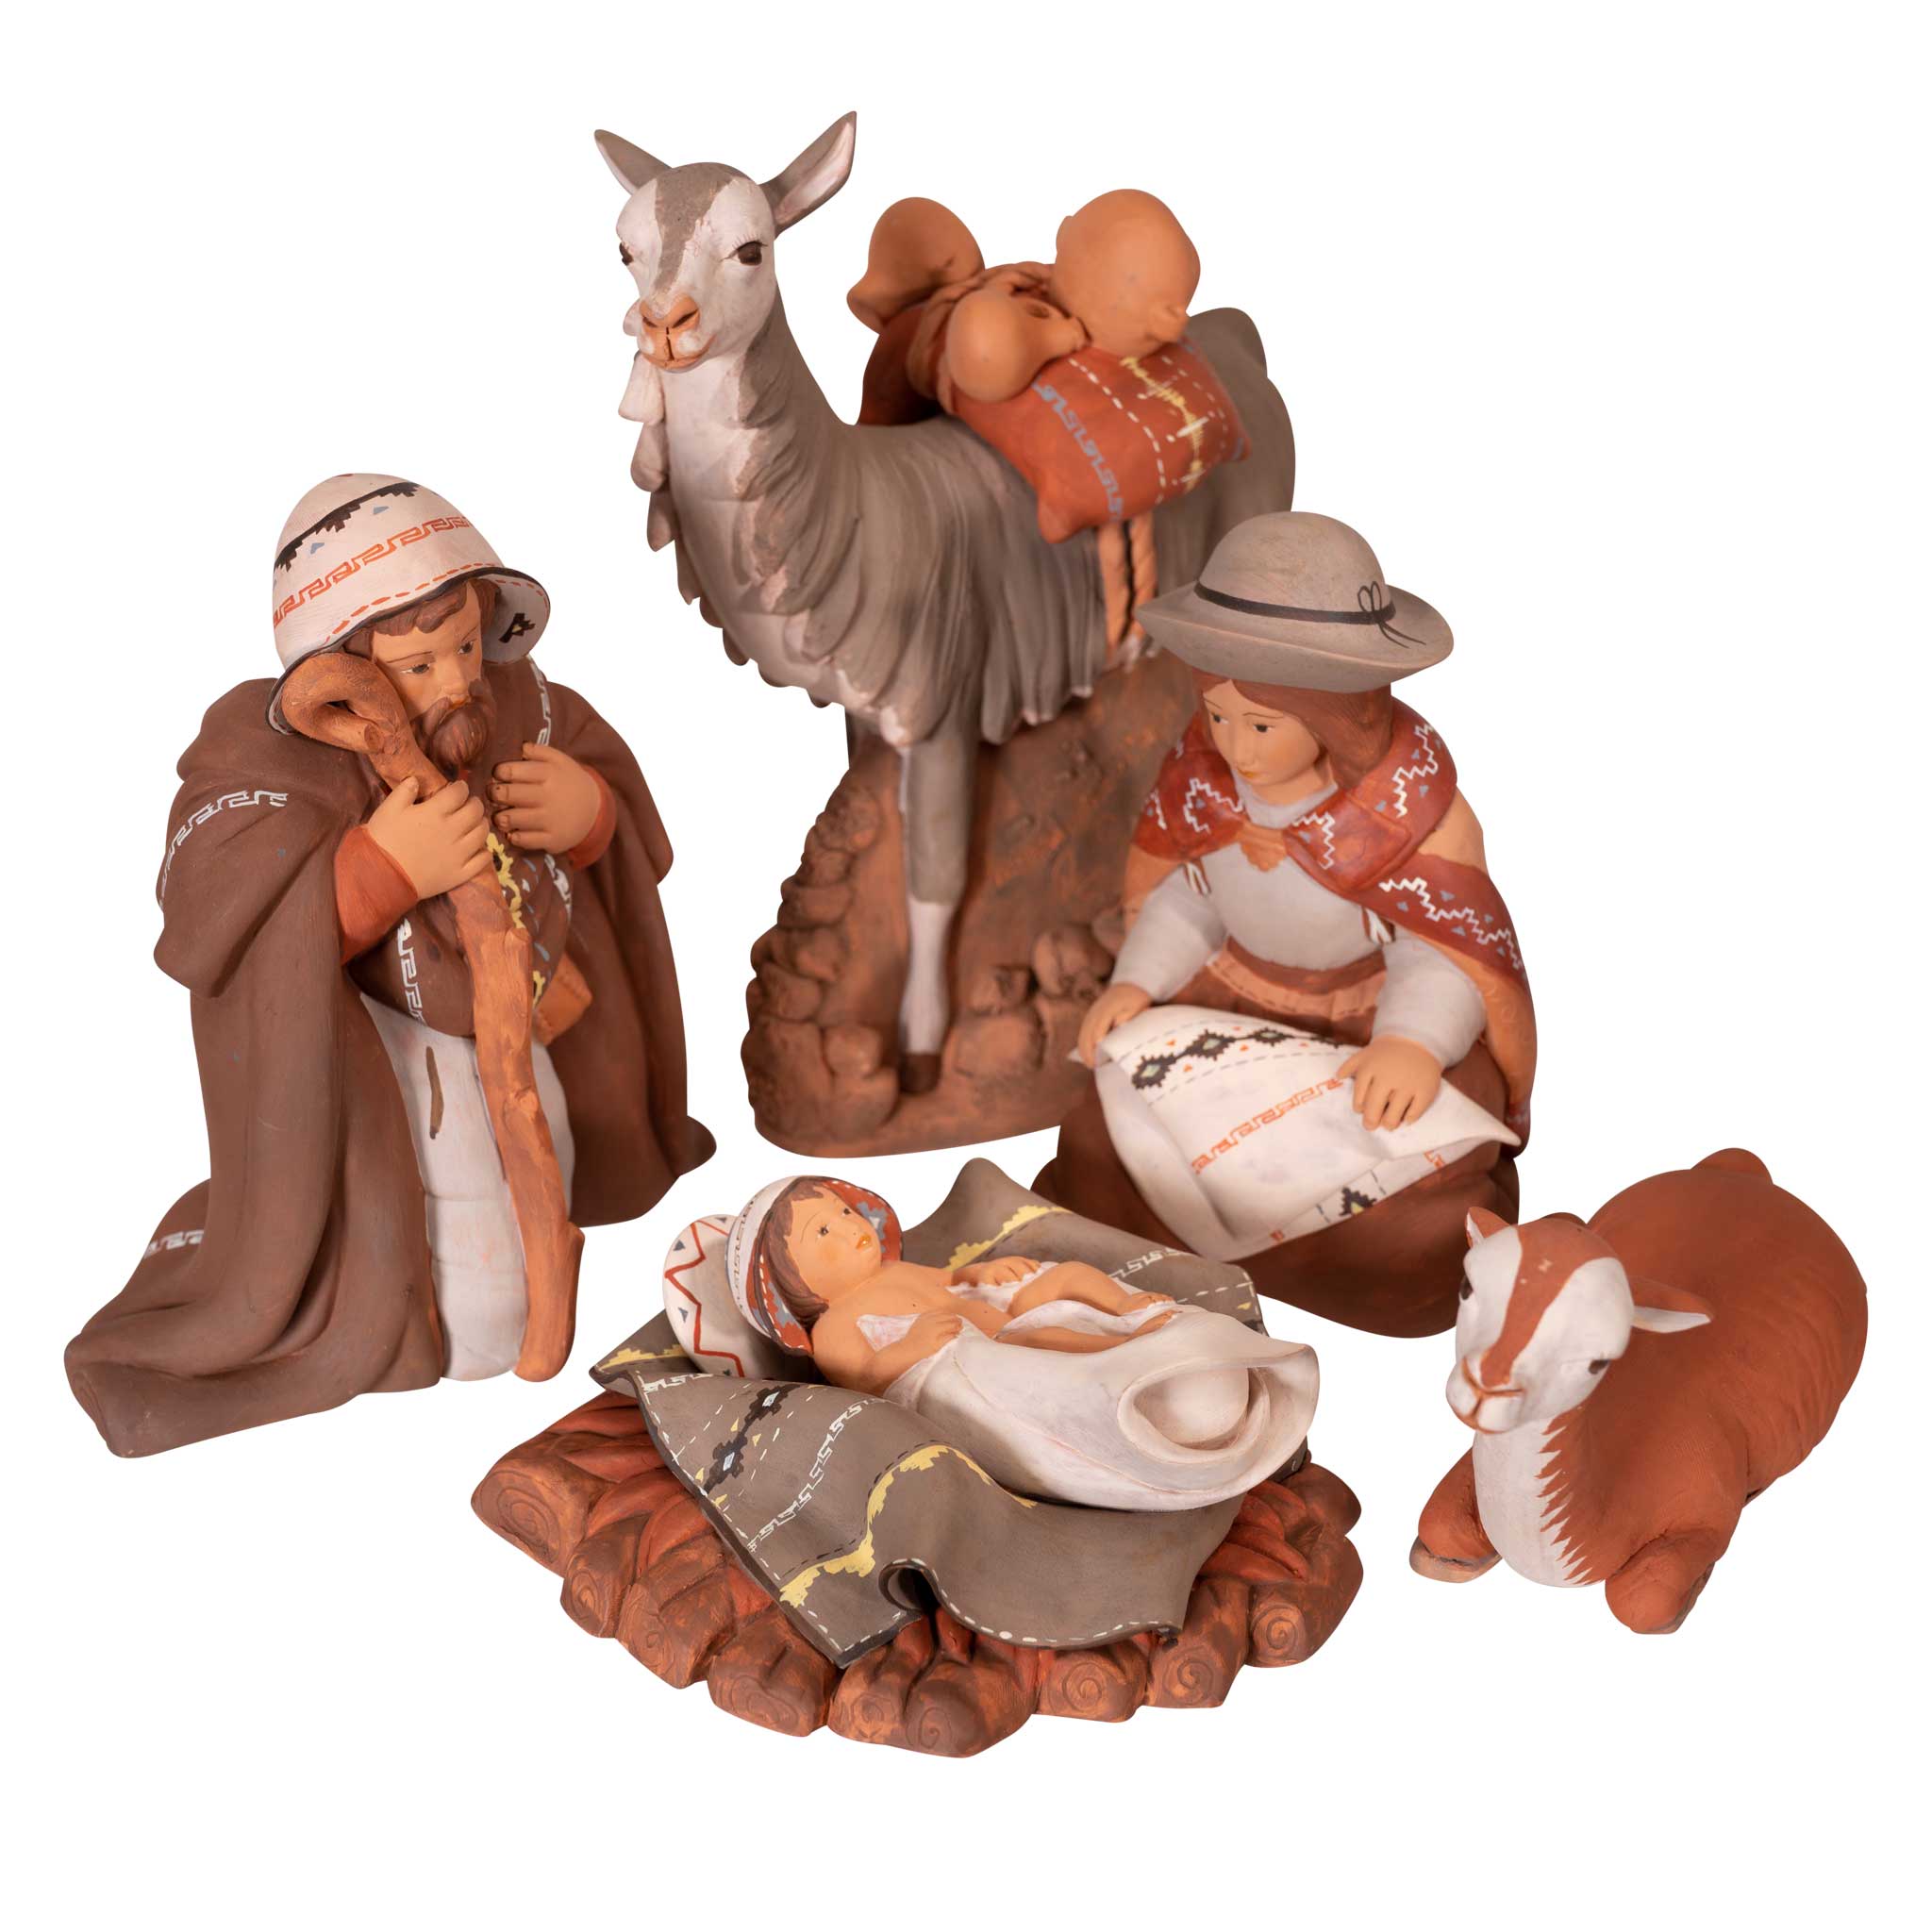 Holy Family and Llama - Fine Ceramic Nativity Set of 5 - 6.7"H